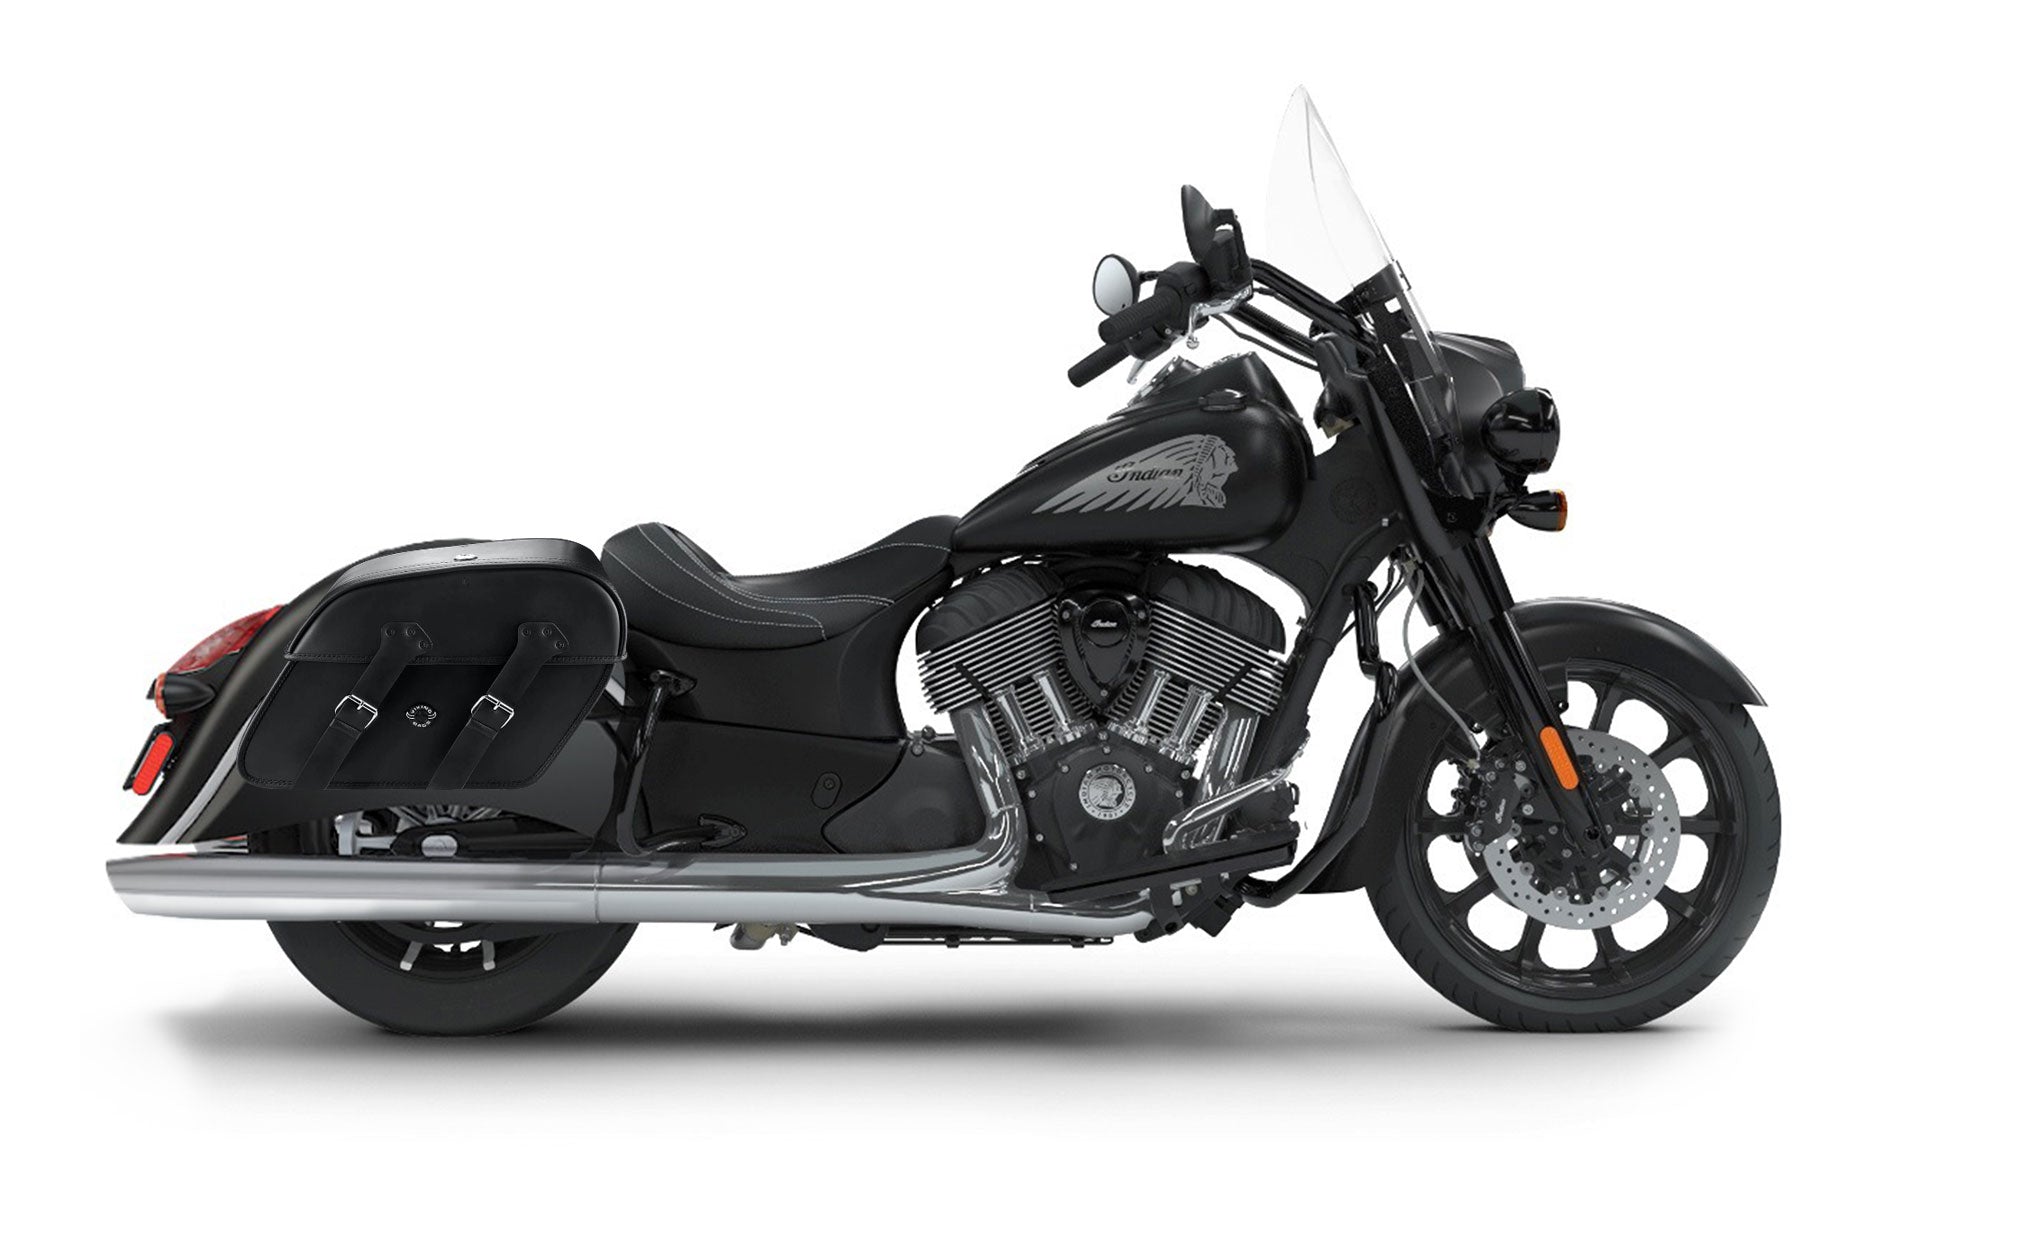 Viking Raven Extra Large Indian Springfield Darkhorse Leather Motorcycle Saddlebags on Bike Photo @expand